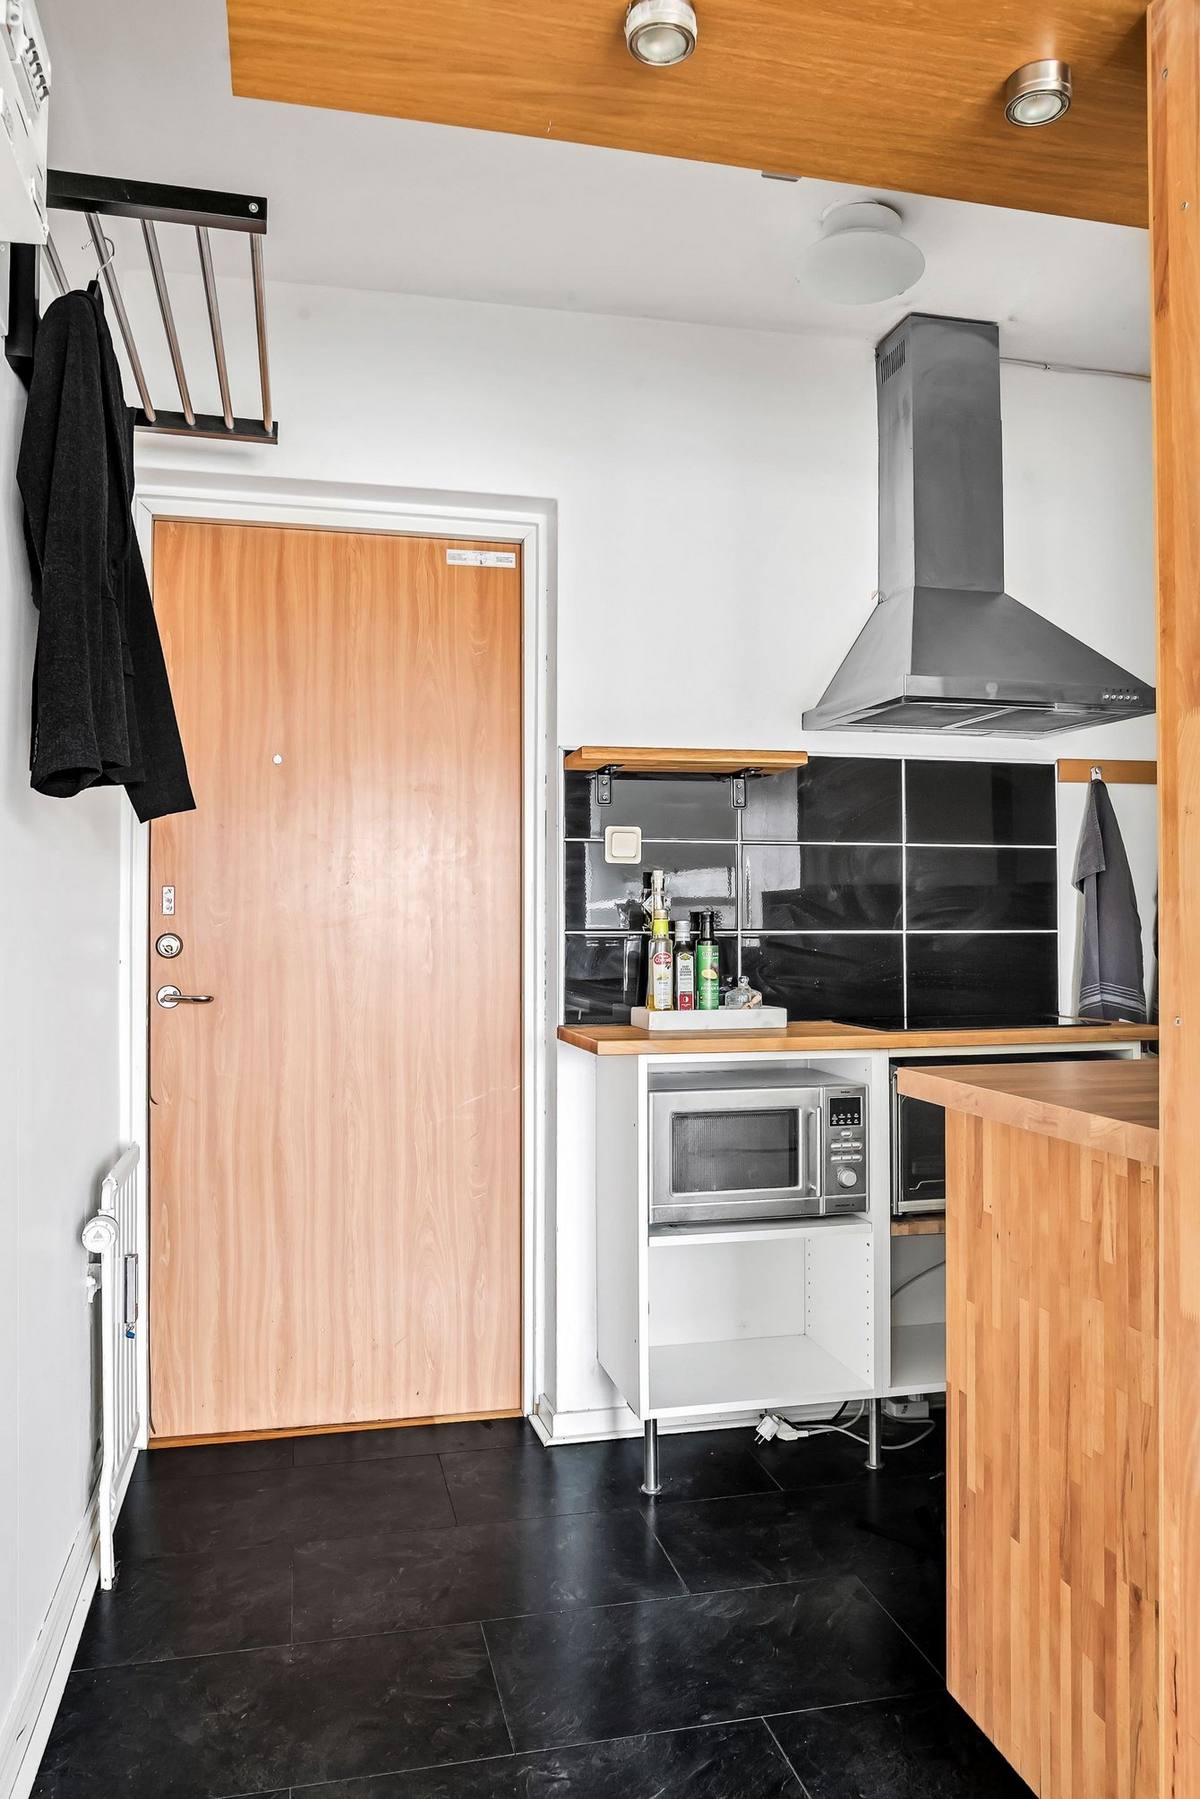 Lối vào căn hộ với cánh cửa gỗ nổi bật giữa bức tường trắng, vì diện tích rất nhỏ, chỉ hơn 20m² nên phòng bếp được bố trí ngay góc cửa ra vào, với sàn nhà màu đen tạo sự phân vùng với khu vực sinh hoạt chung phía trong.